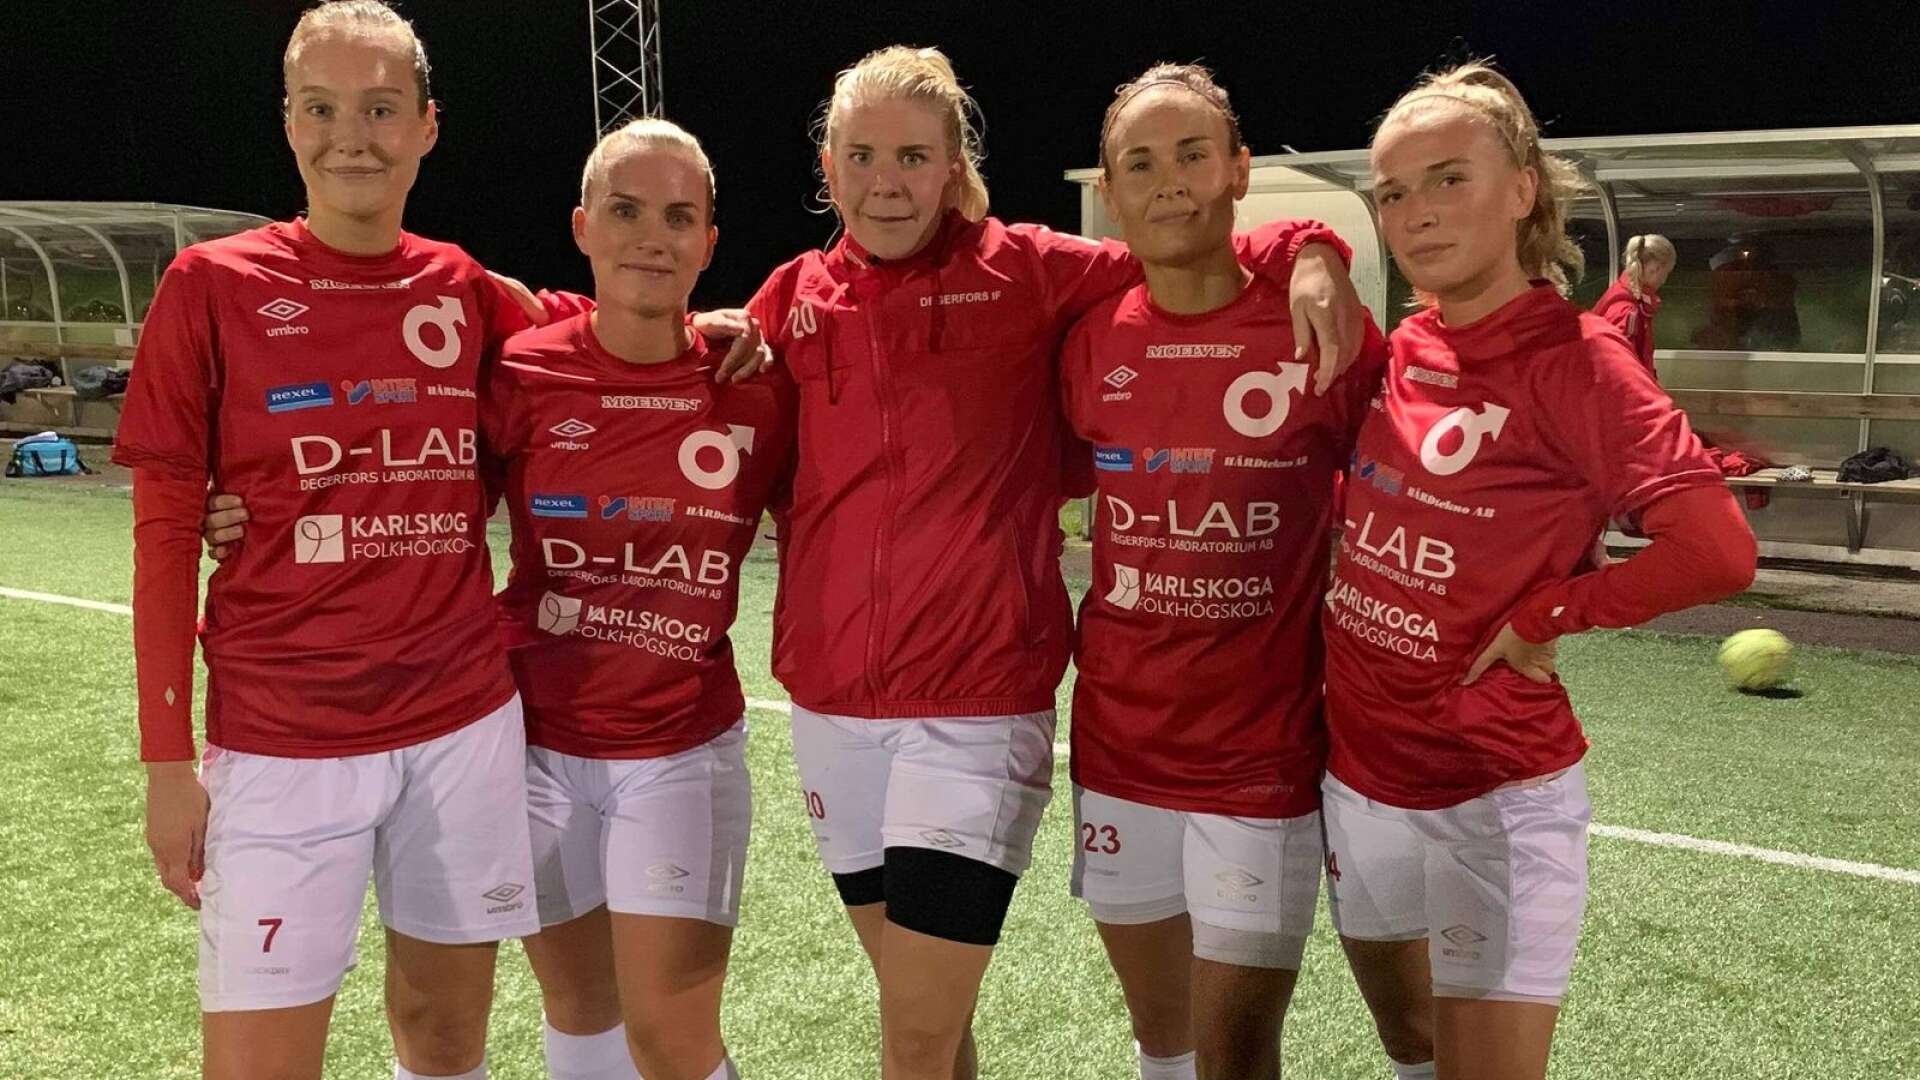 Målskyttarna från vänster: Emilia Dahlström, Jessica Höglund, Emma Tryggvesson, Jessica Karlsson och Maja Edlund. 